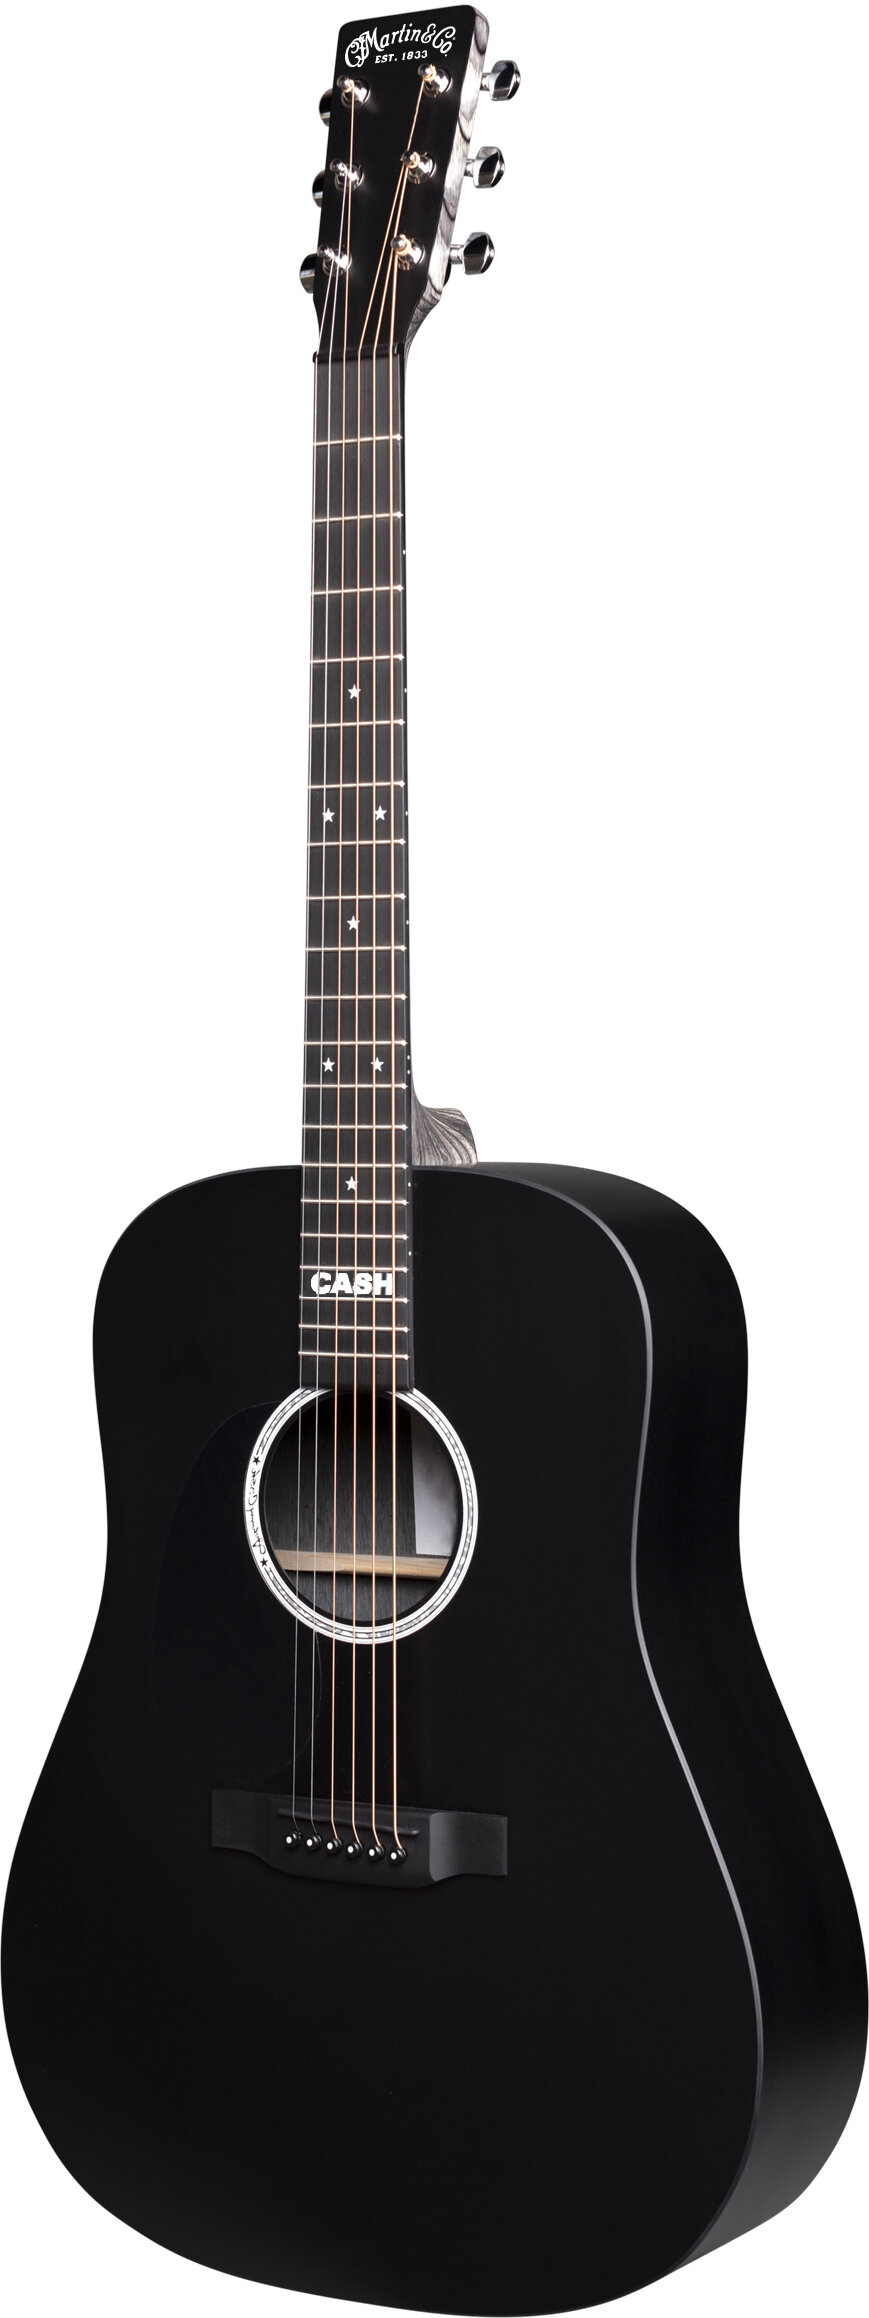 Martin DX Johnny Cash Acoustic Guitar Left Hand -  11DXJOHNNYCASHL